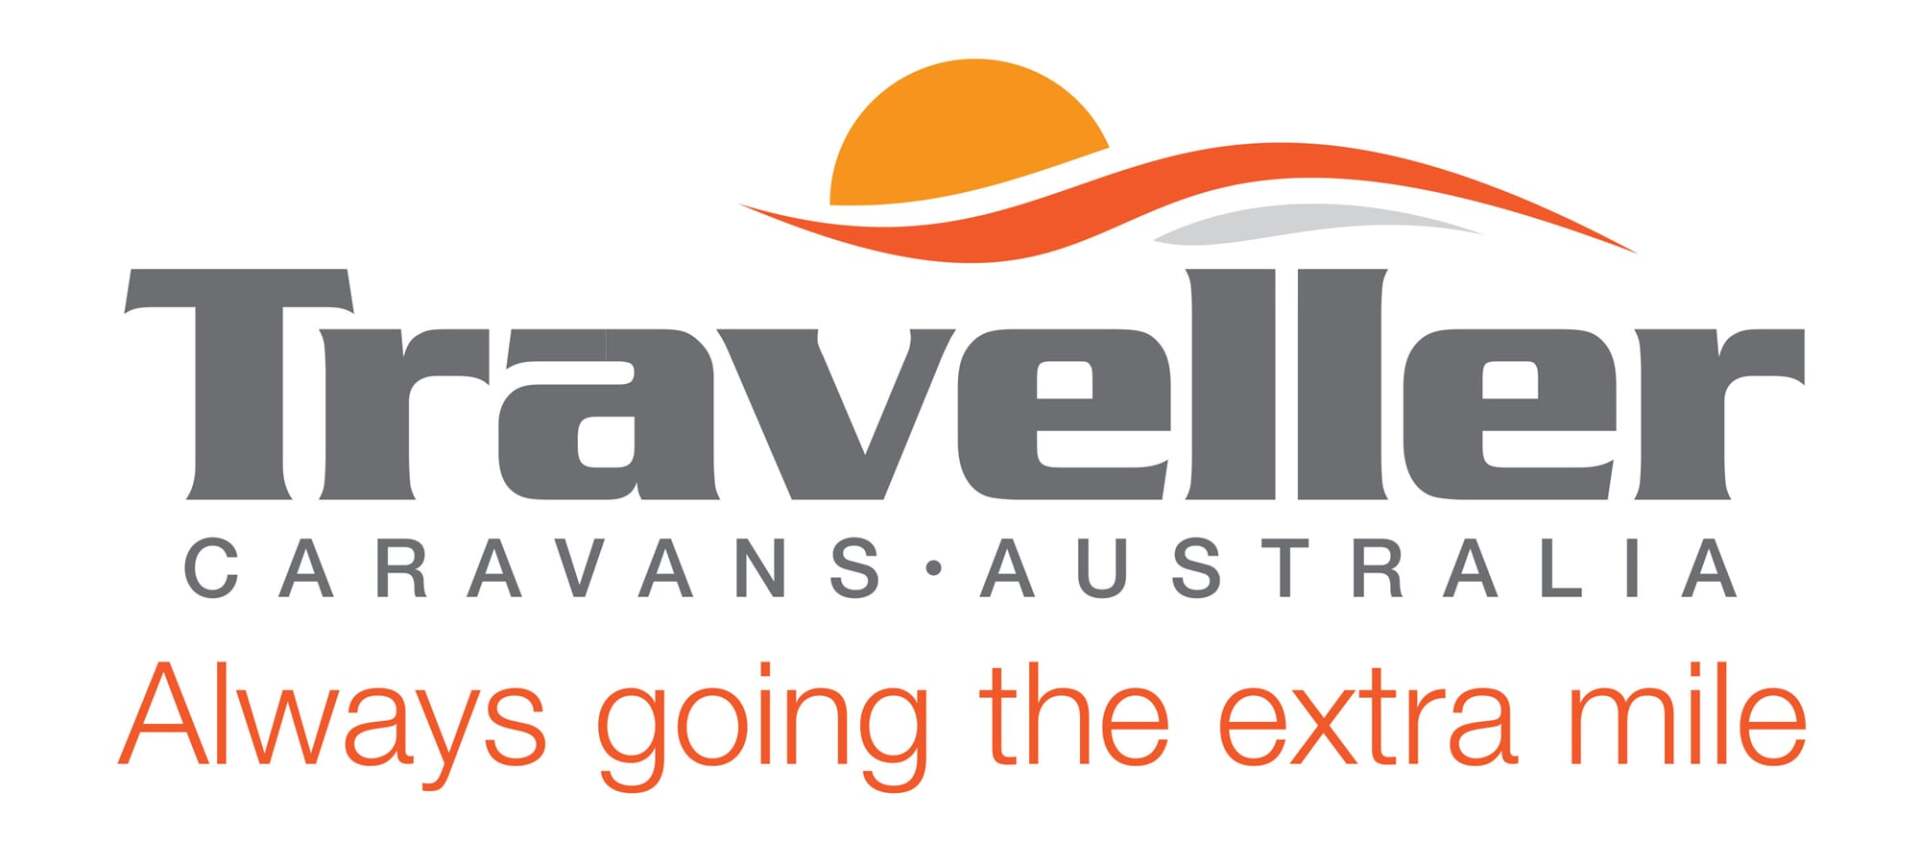 Traveller Caravans Australia